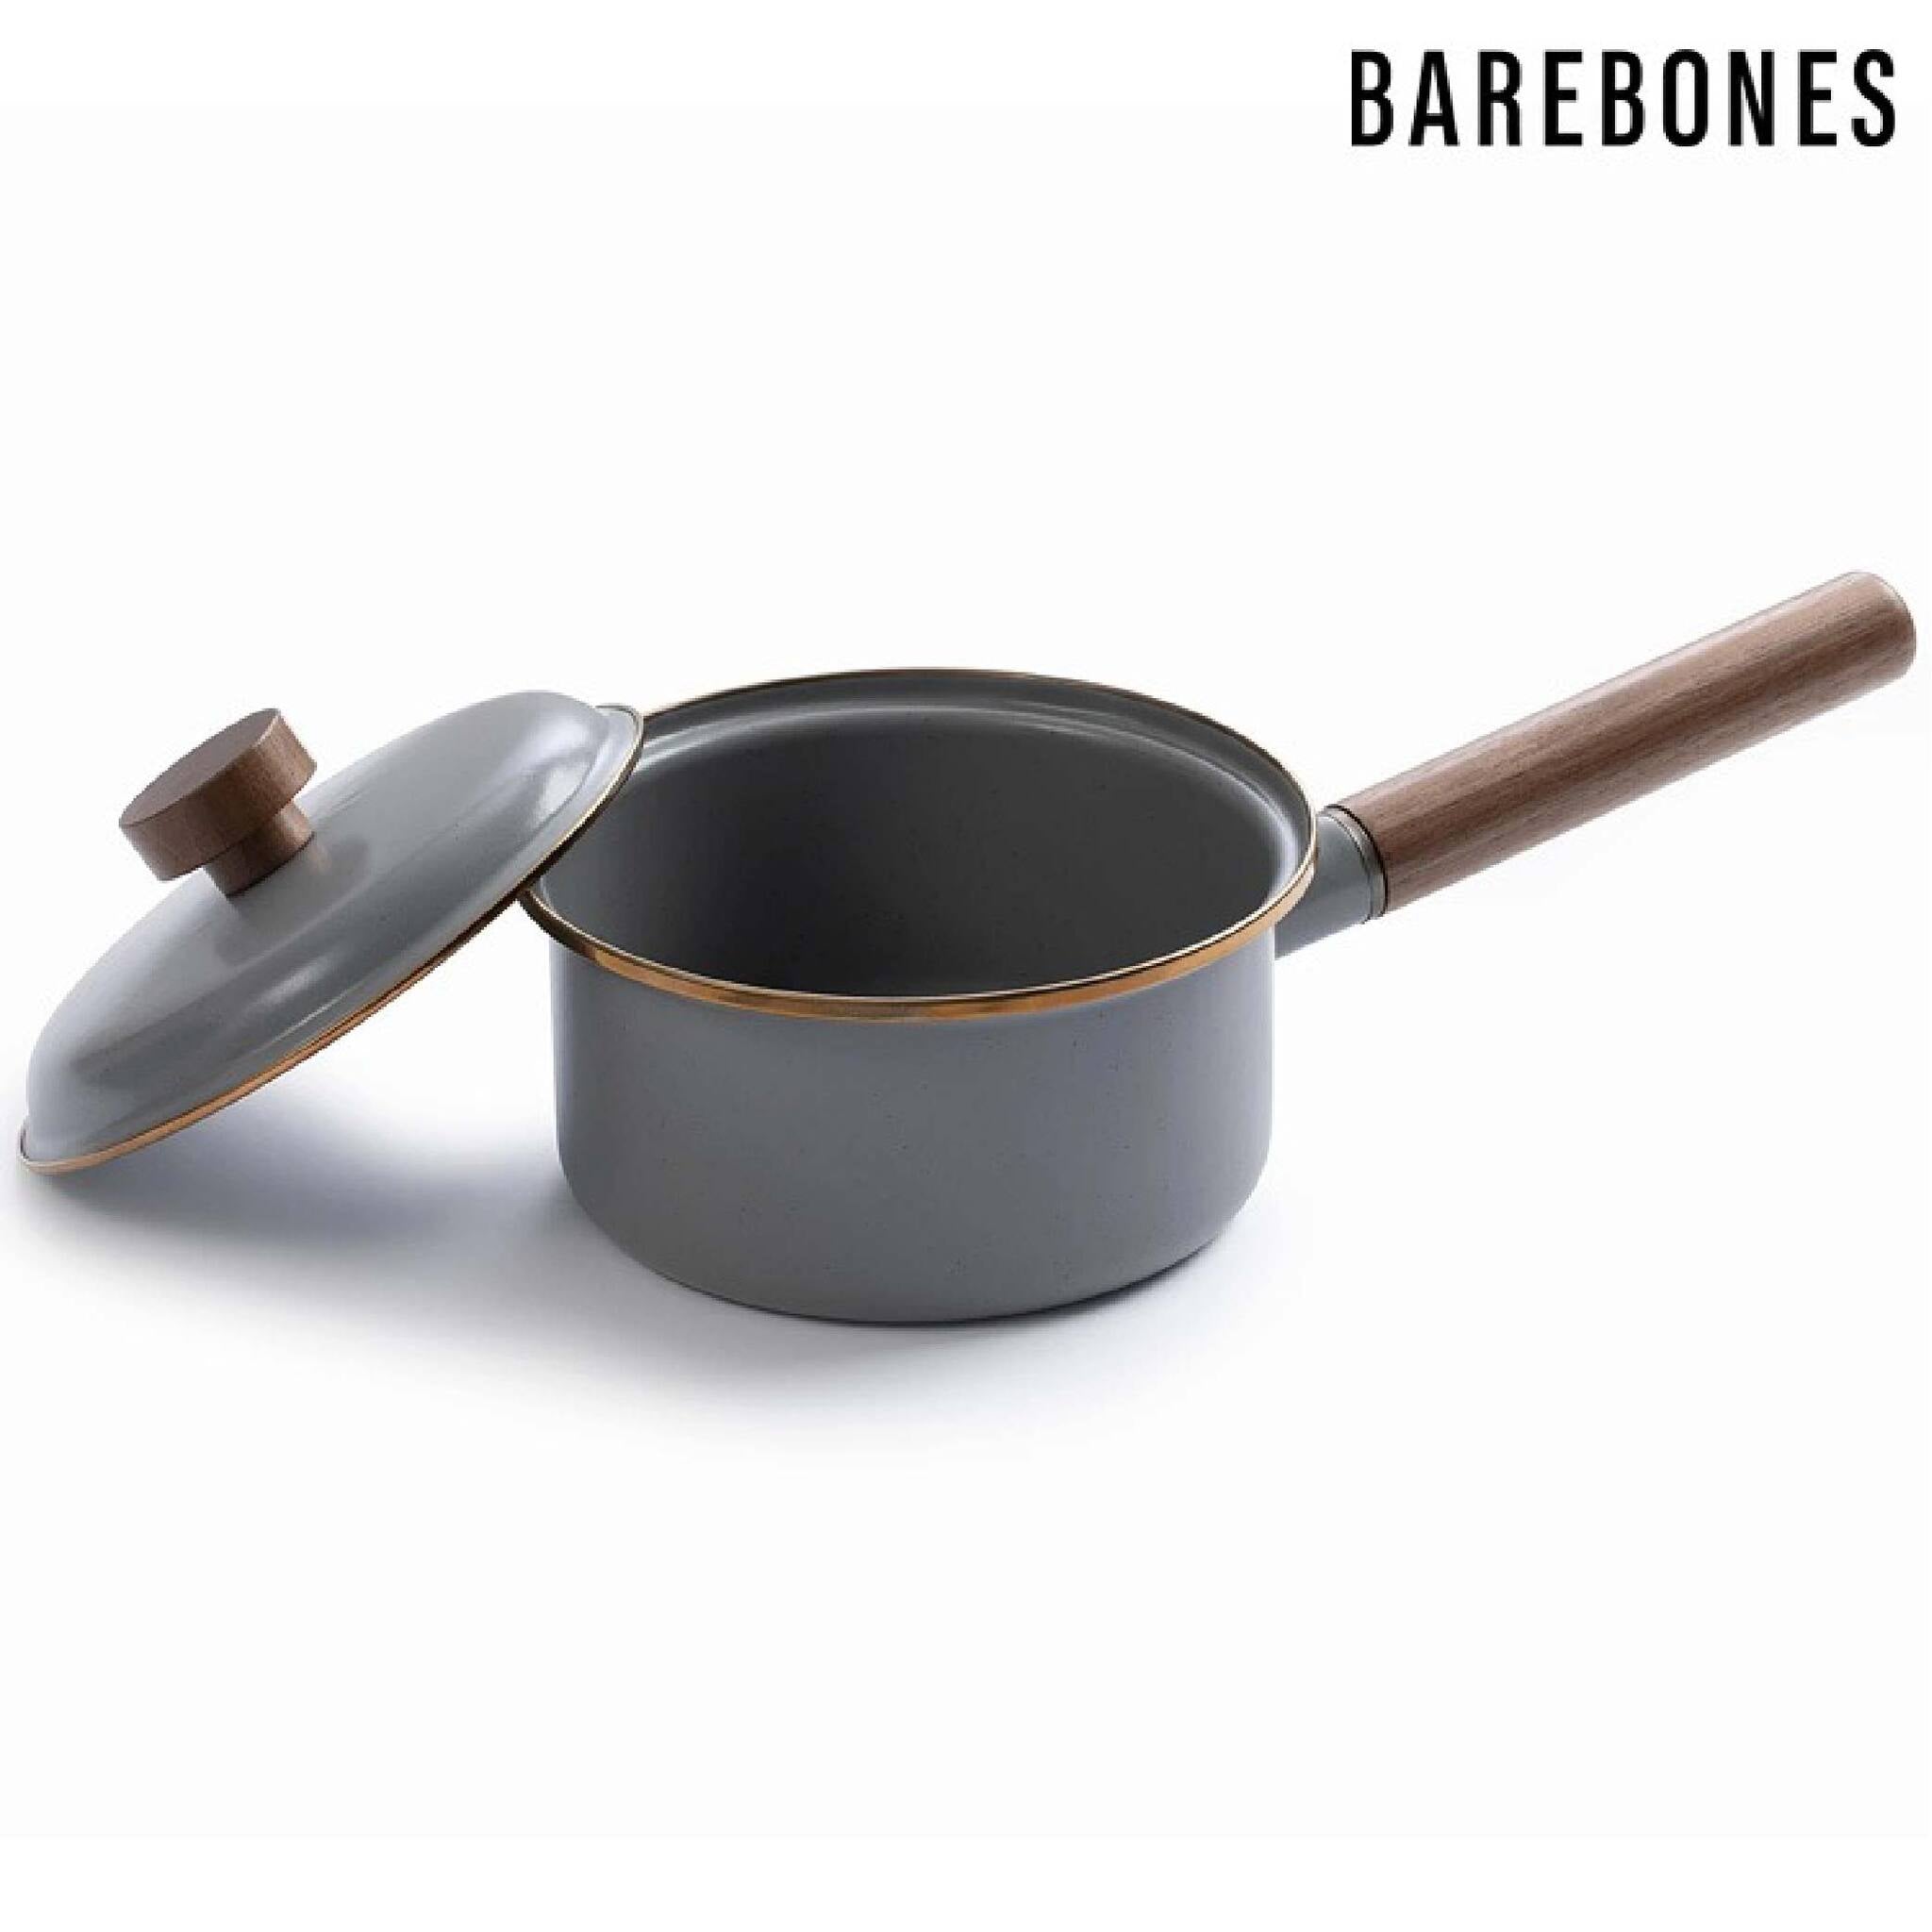 Barebones 琺瑯單柄鍋 1.5L CKW-377